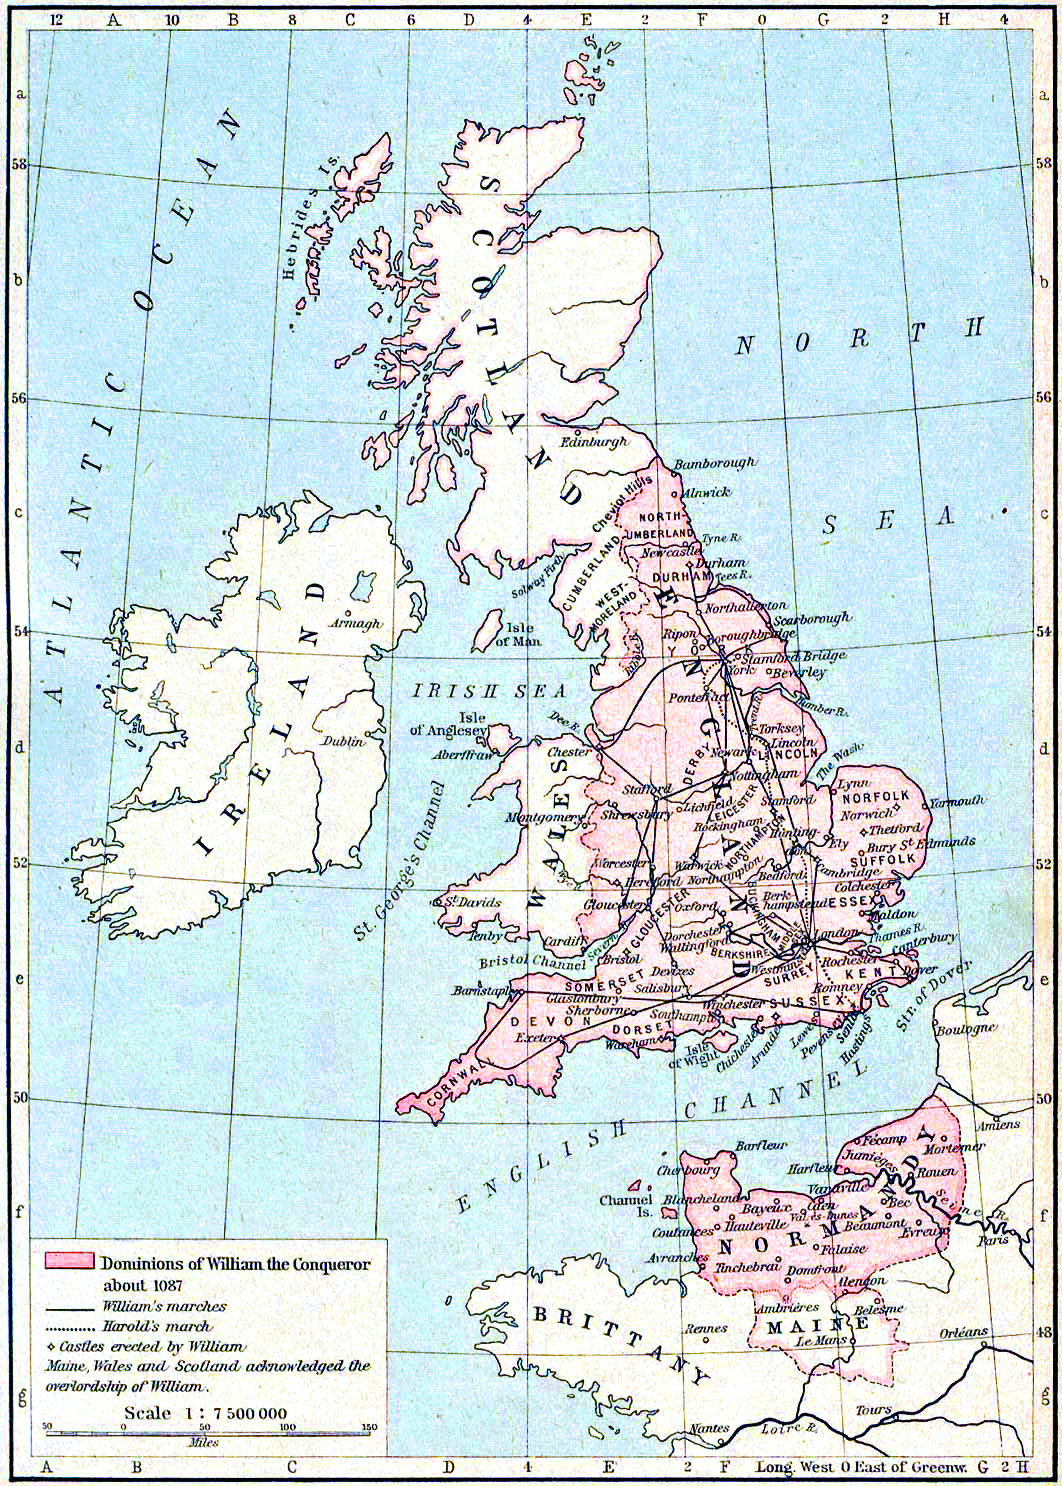 Podbój Anglii przez Normanów (1066). Najważniejsza wojna w dziejach